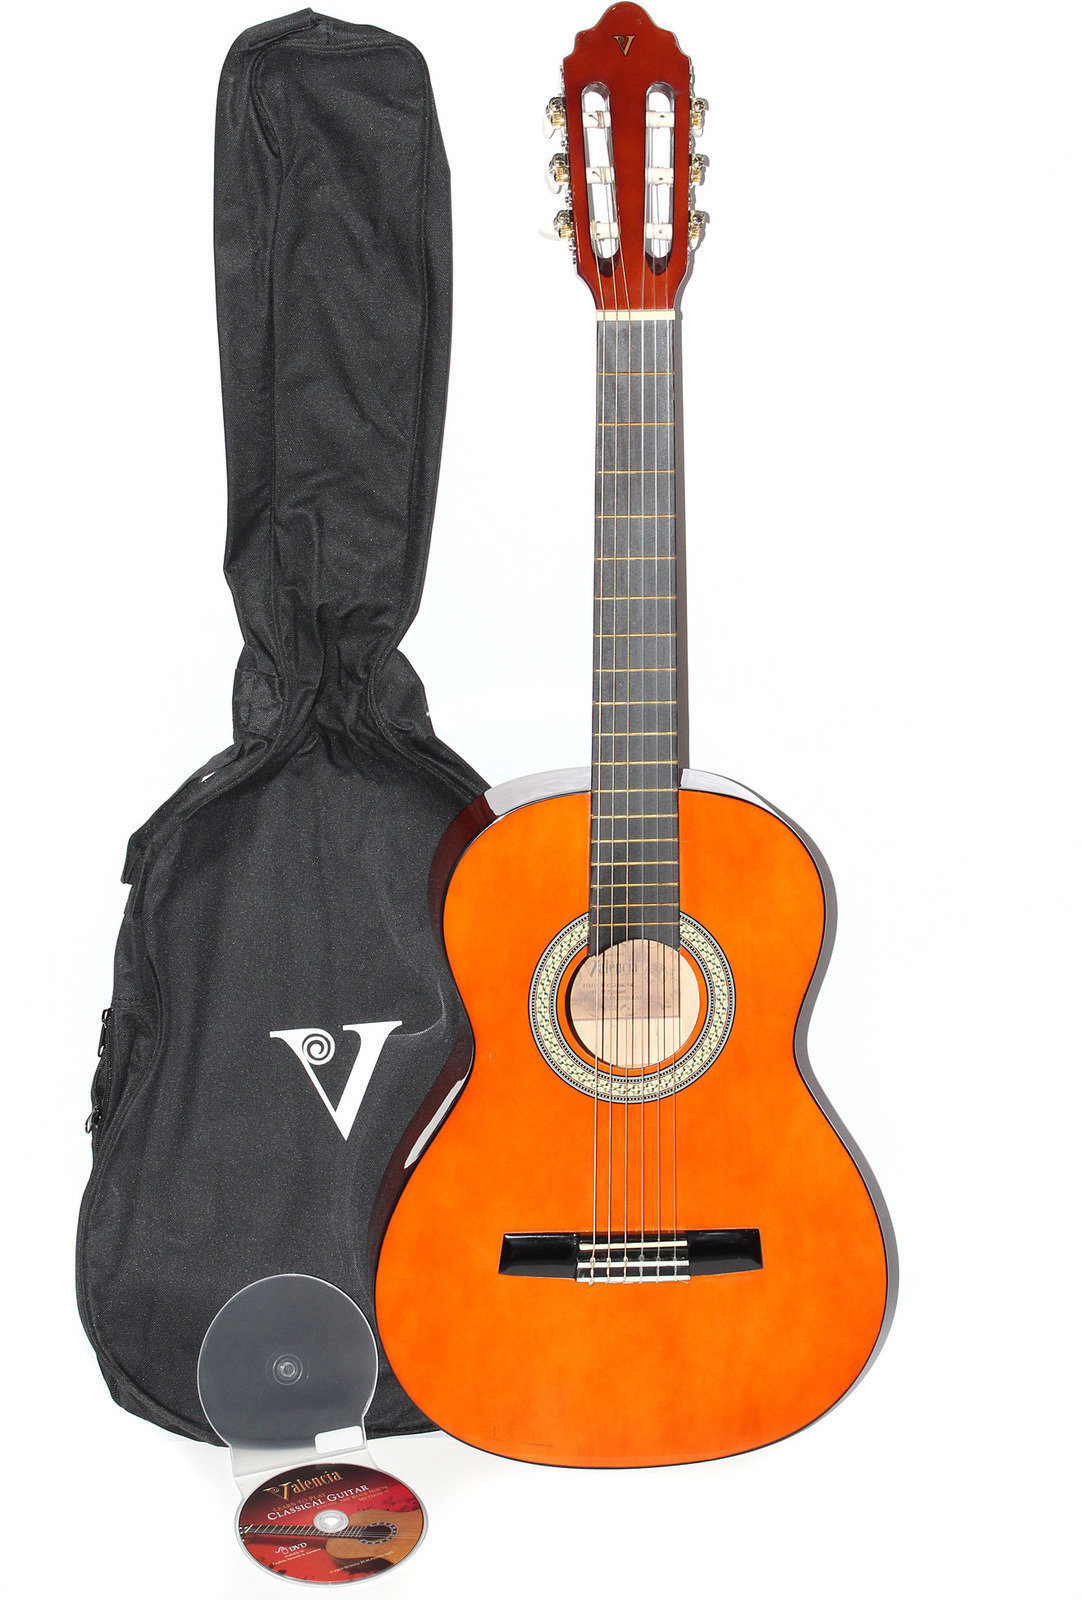 Guitare classique taile 1/2 pour enfant Valencia CG 150 K 1/2